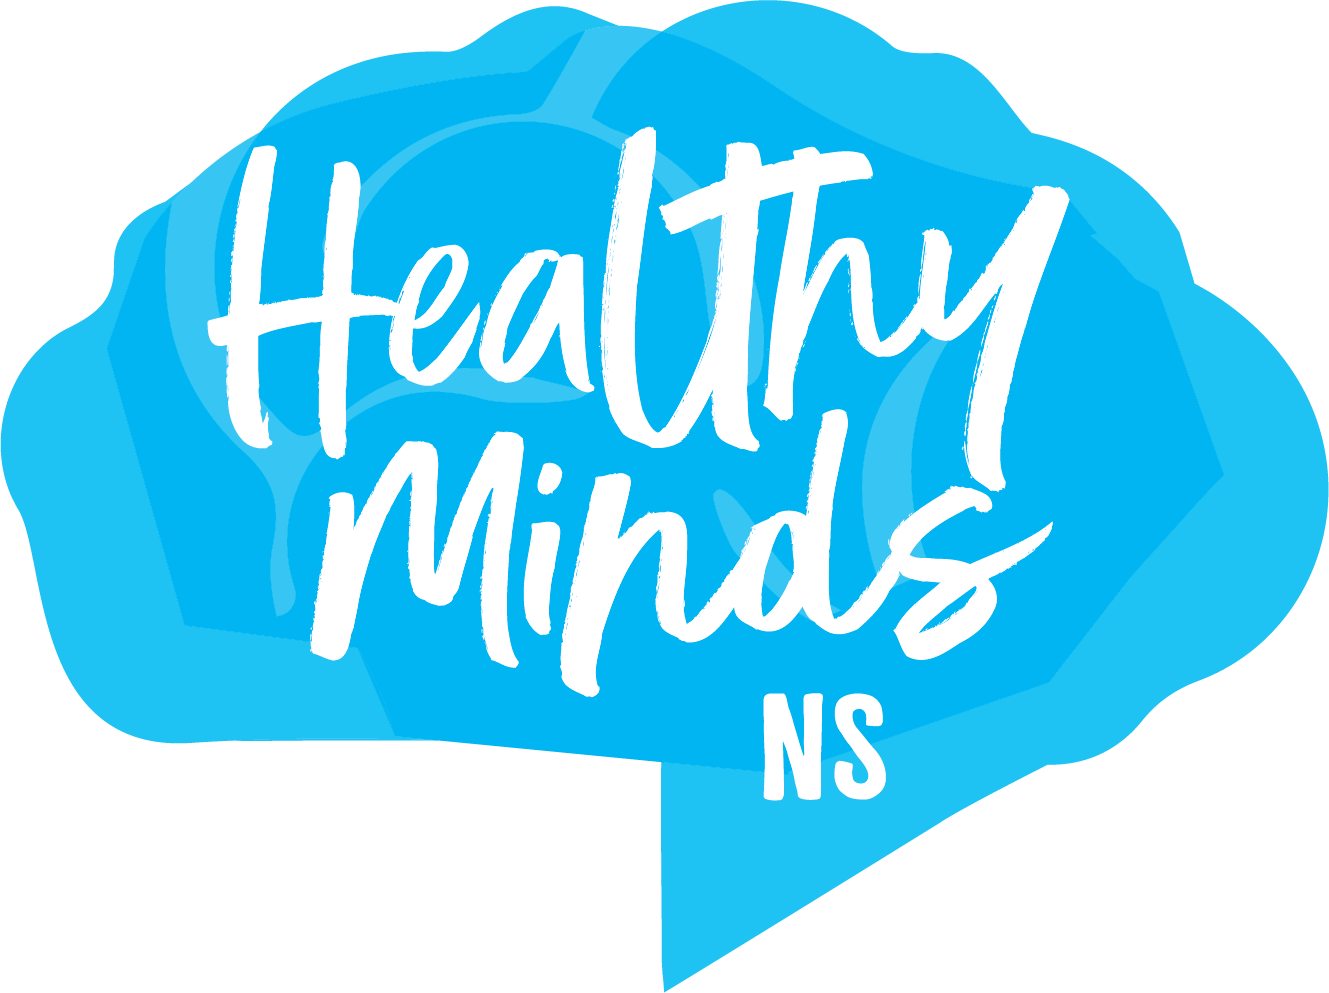 Nova Scotia Healthy Minds